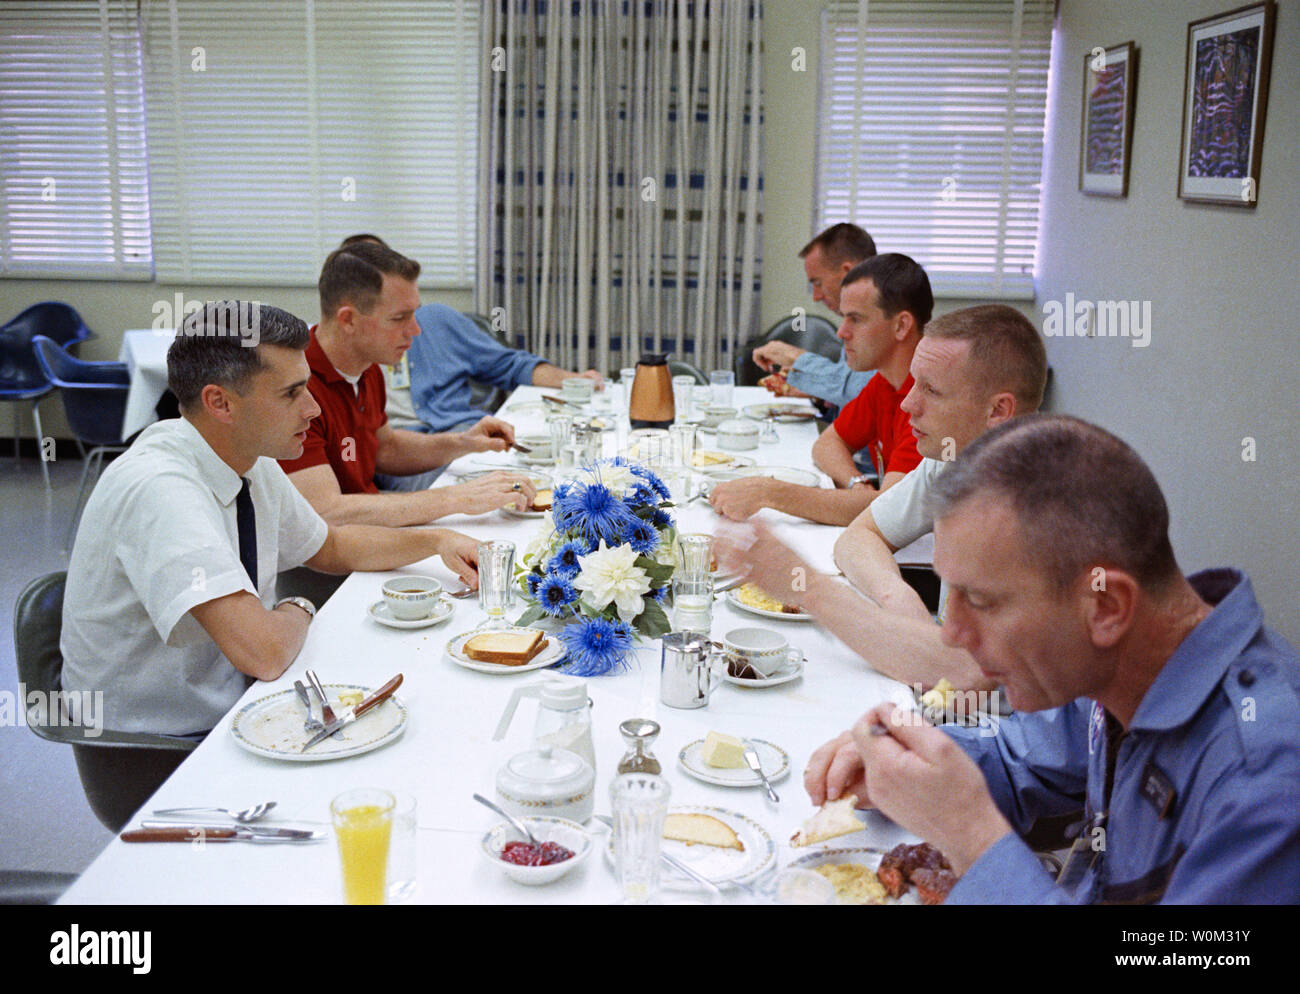 Der Gemini 8 prime Crew, zusammen mit einigen anderen Astronauten, haben ein herzhaftes Frühstück mit Steak und Eier am 16. März 1966, der Morgen der Gemini 8 starten. Sitzt im Uhrzeigersinn um den Tisch, beginnend an der unteren rechten, Deke Slayton, Bemannte Raumfahrt Center (MSC) stellvertretender Direktor für Flight Crew Operations; Astronaut Neil Armstrong, Gemini 8 Befehl Pilot; Wissenschaftler - Astronaut Curt Michel; astronaut Walter Cunningham; Astronauten Alan Shepard (Gesicht verdeckt), Chief, MSC Astronaut Office; Astronauten David Scott, Gemini 8 Pilot, und der Astronaut Roger Chaffee. März 16, 2016 kennzeichnet das 50th Anni Stockfoto